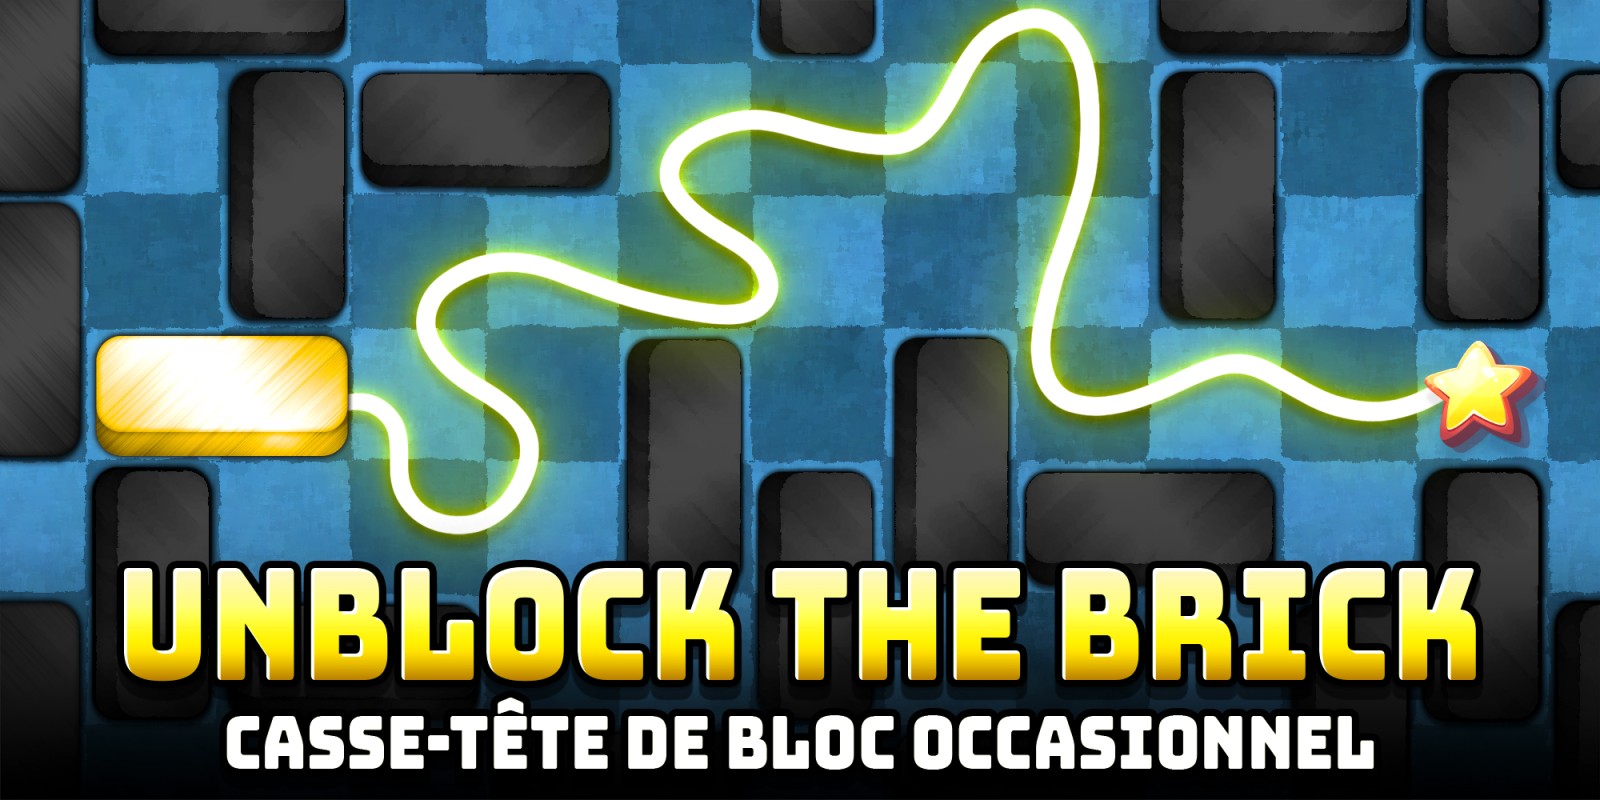 Unblock The Brick: Casse-tête de bloc occasionnel